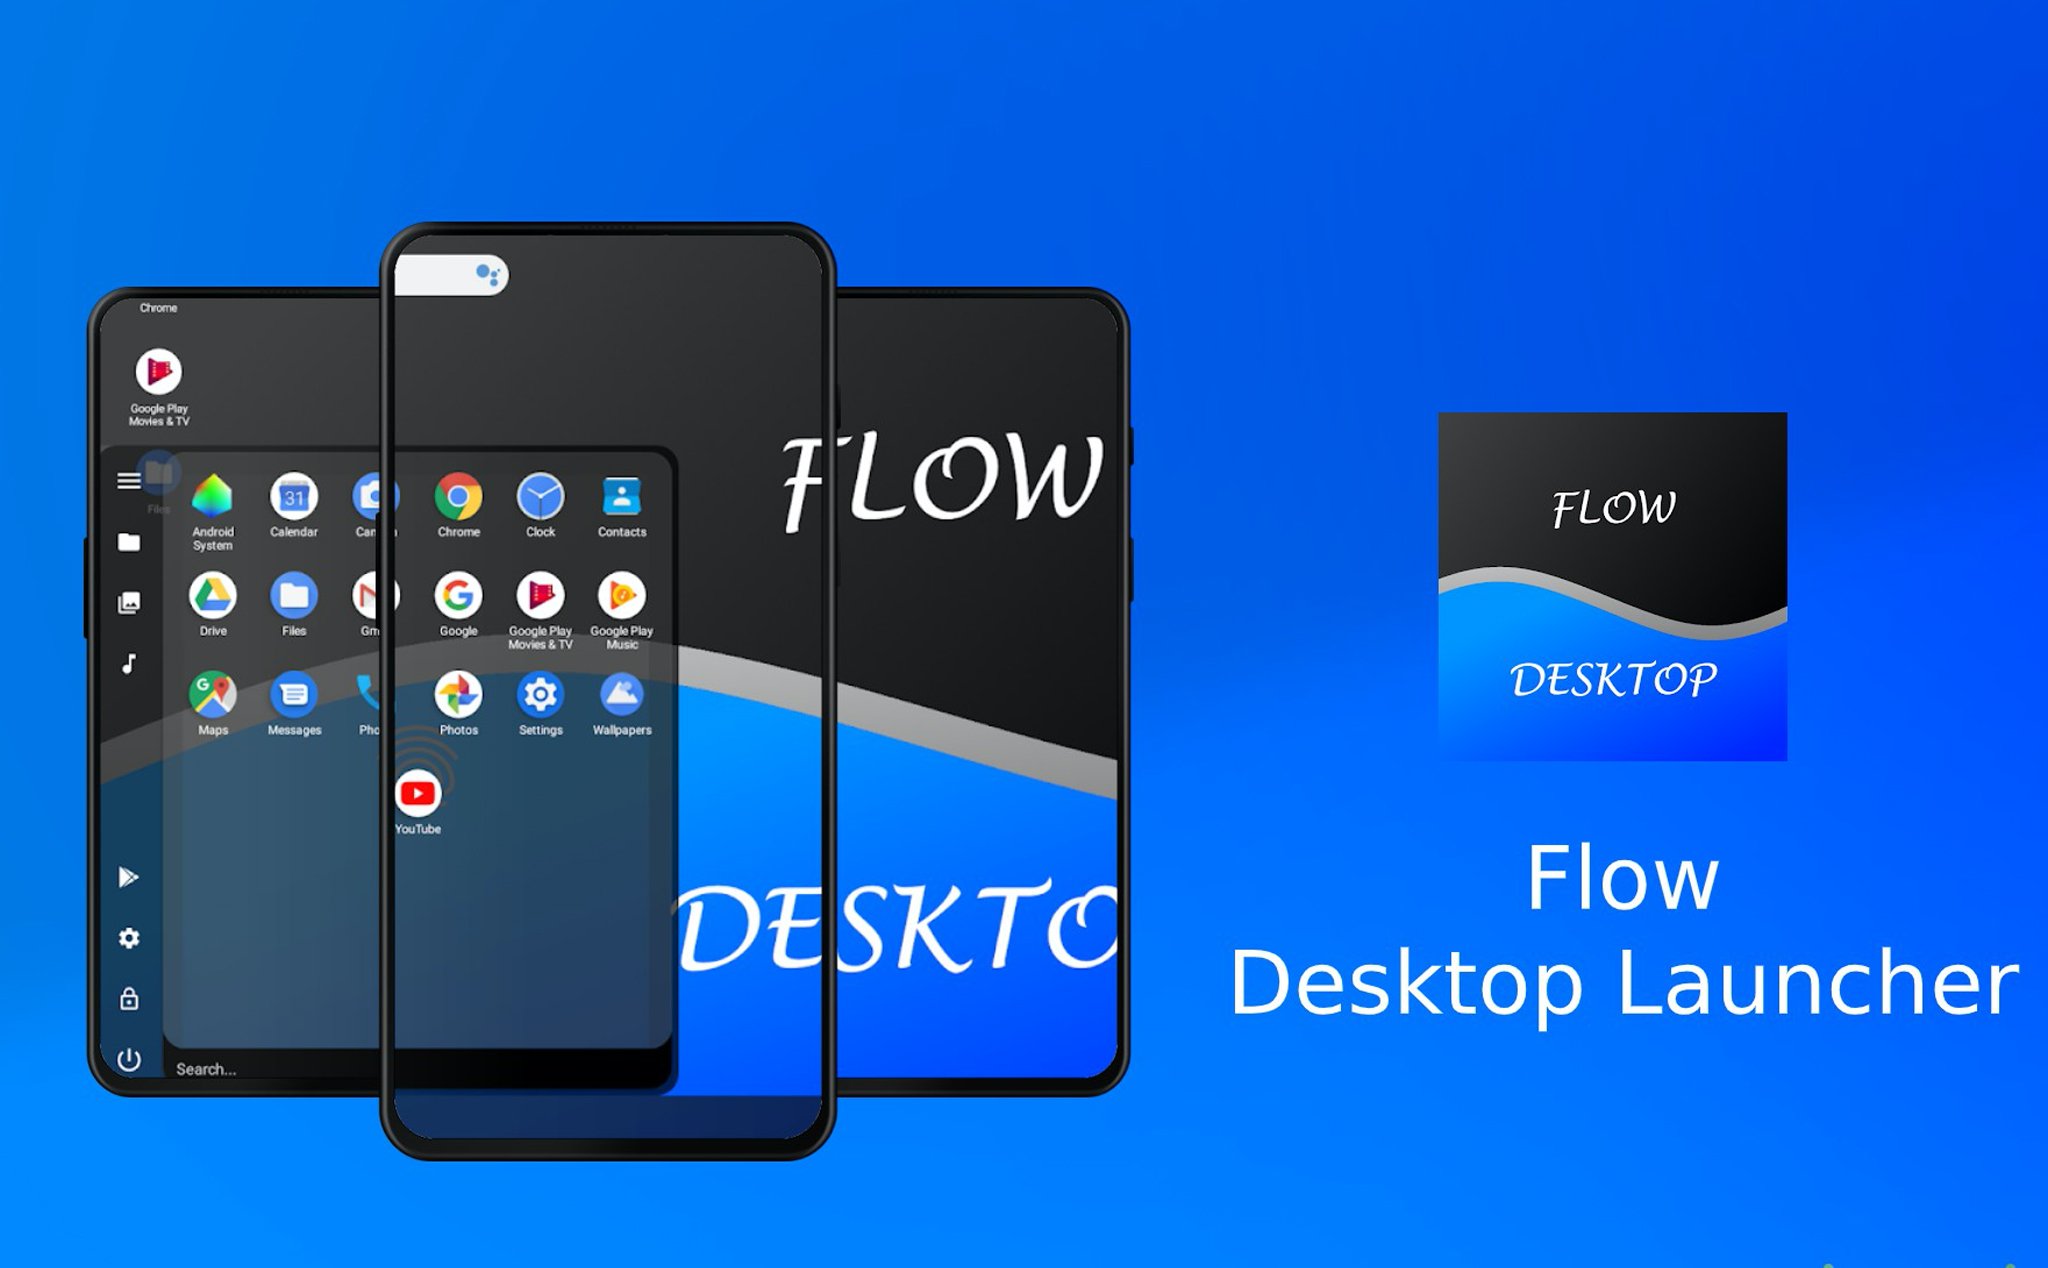 Biến điện thoại Android thành Desktop trên Android 10 với Flow Desktop launcher